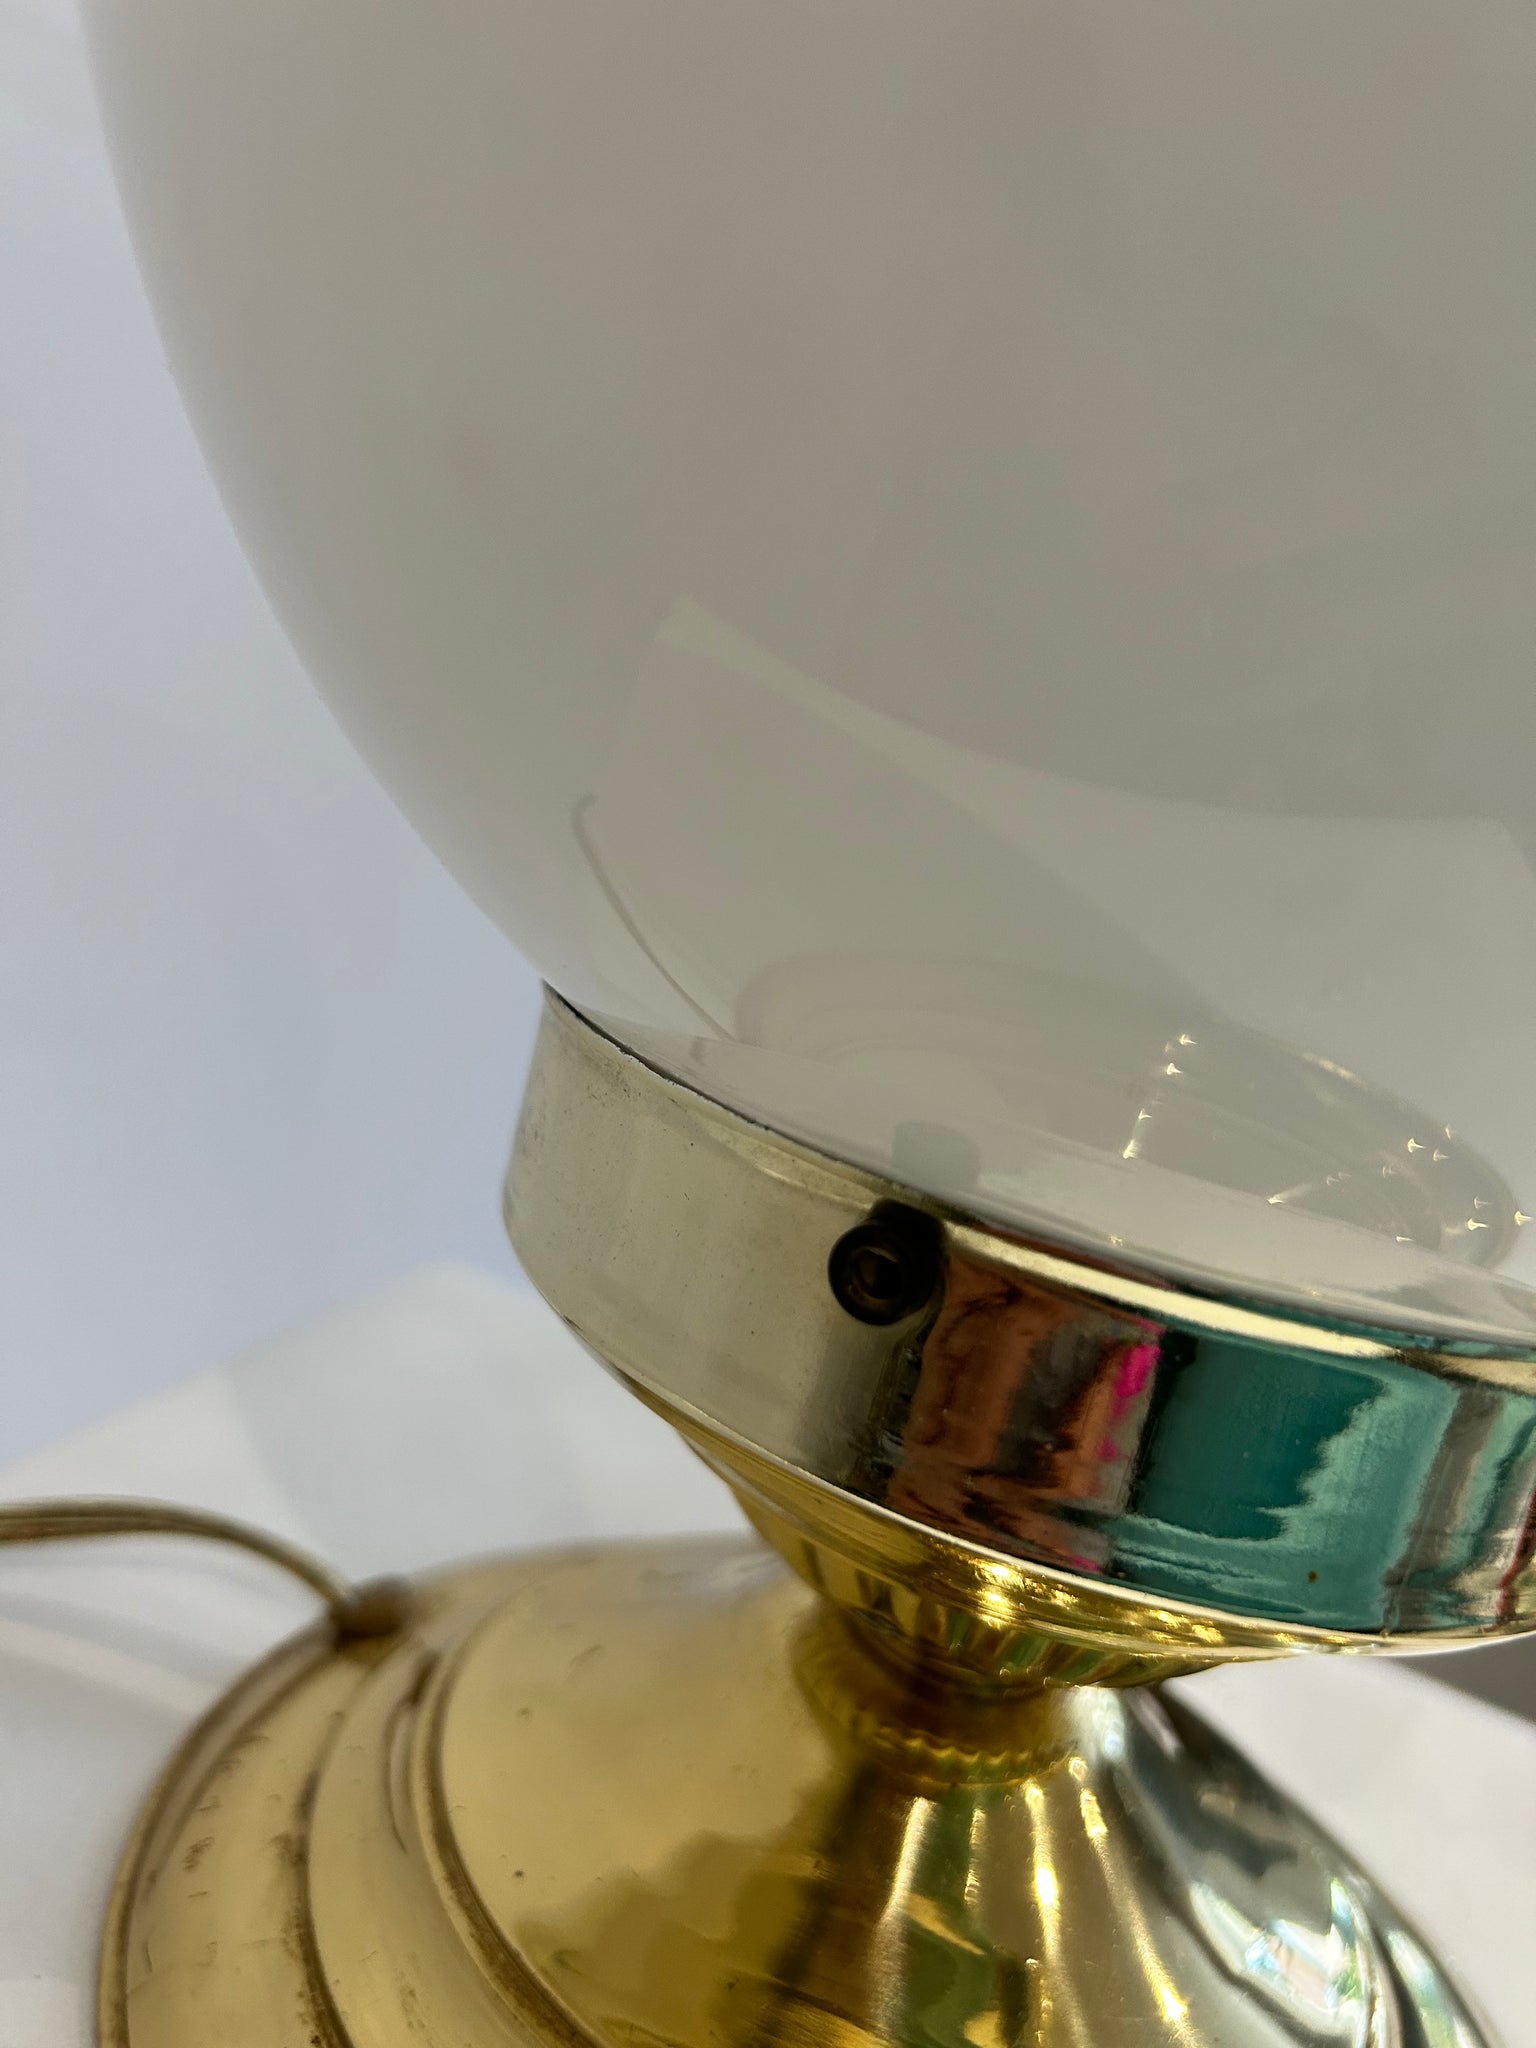 White Murano glass style egg lamp